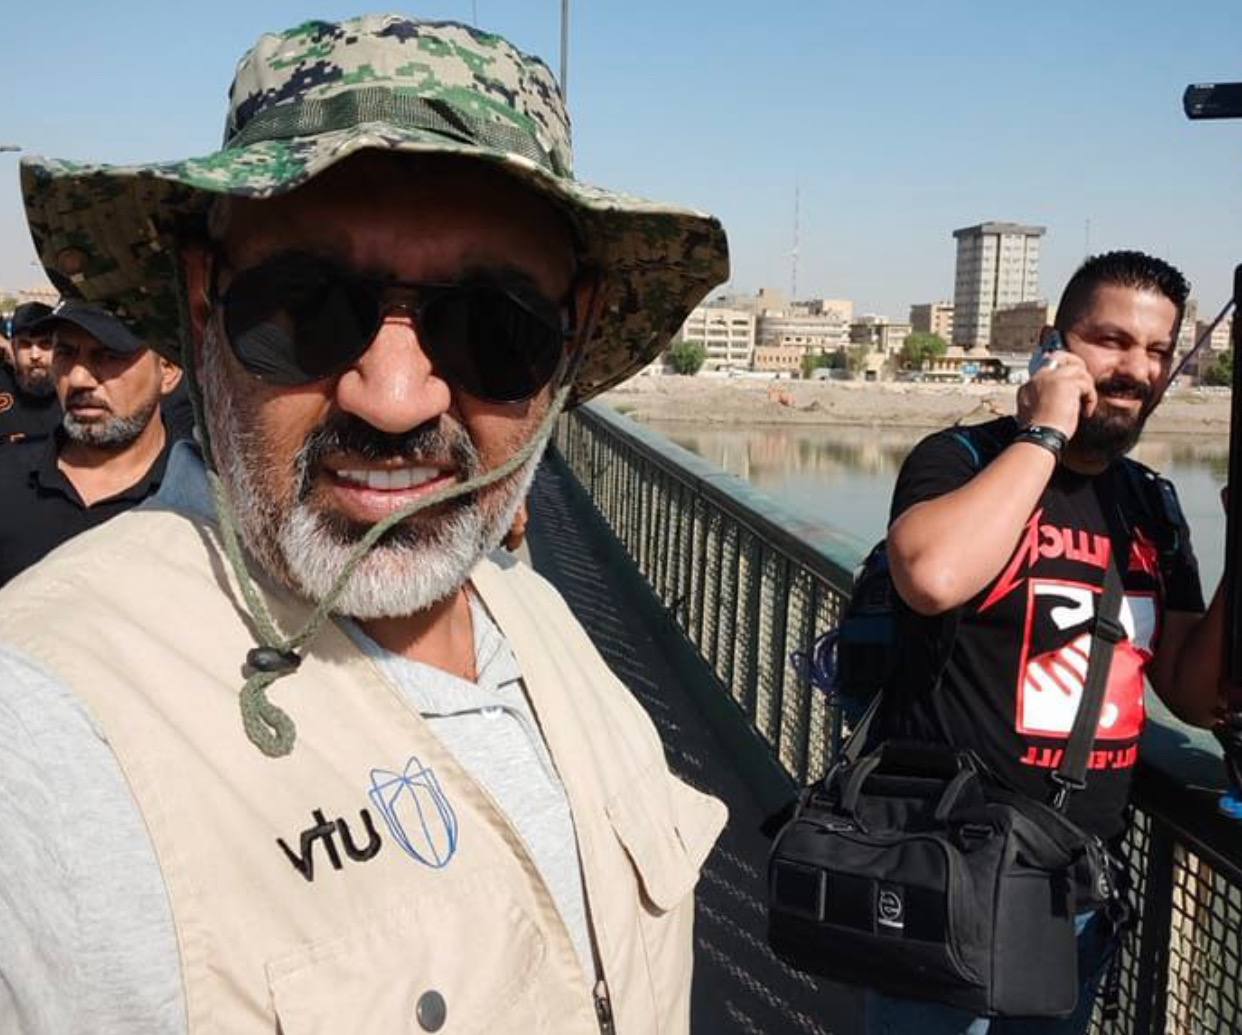 قوة امنية تعتدي بالضرب على كادر قناة UTV في بغداد